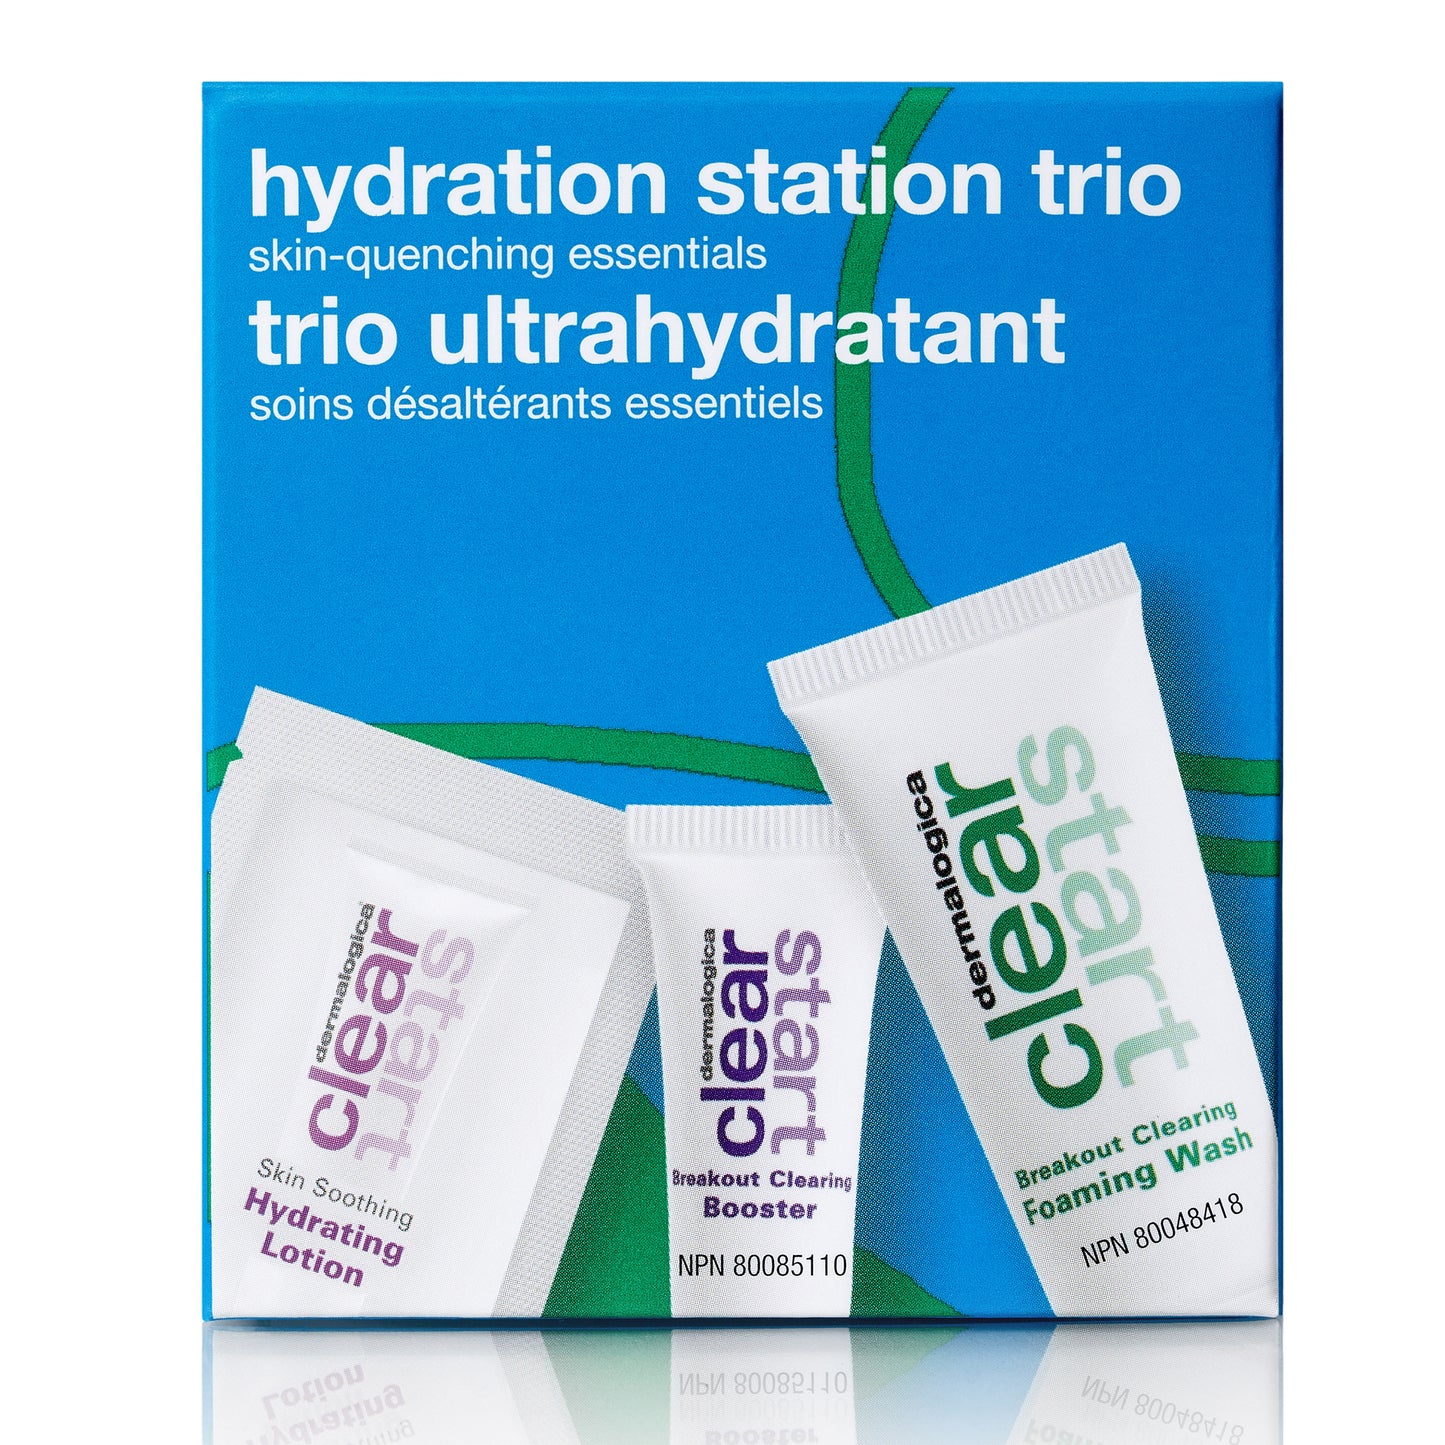 hydration station trio